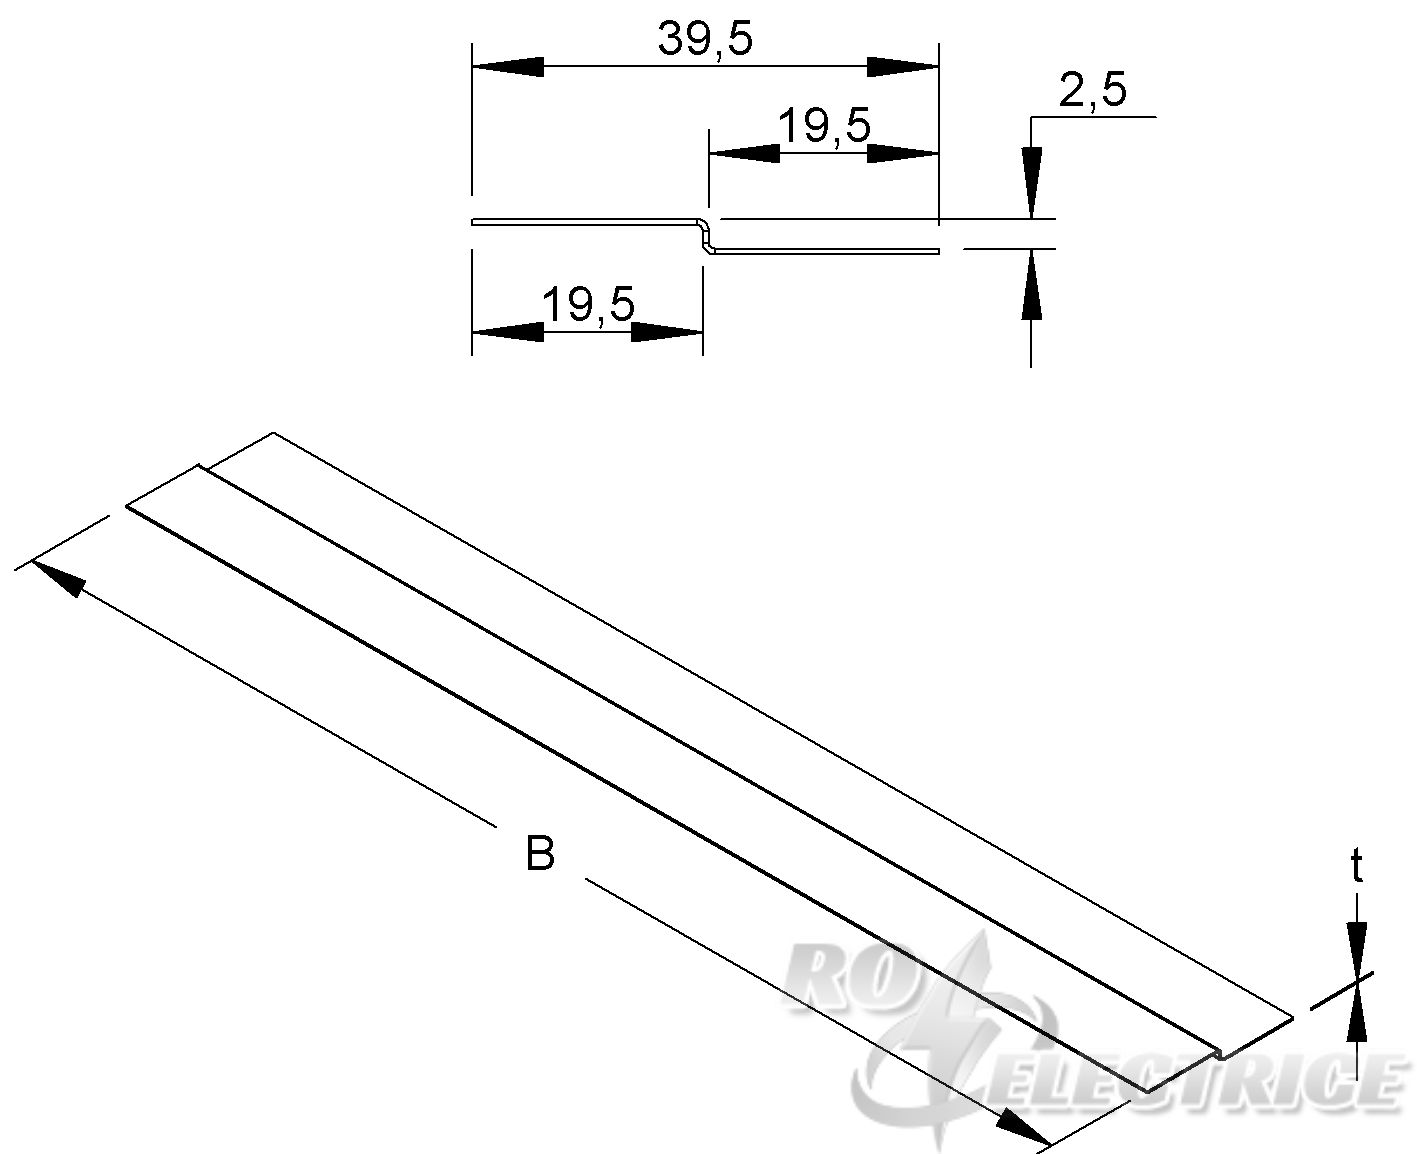 Deckelstoßleiste, Z-Form 40X175 mm, t=0,5 mm, Stahl, bandverzinkt DIN EN 10346